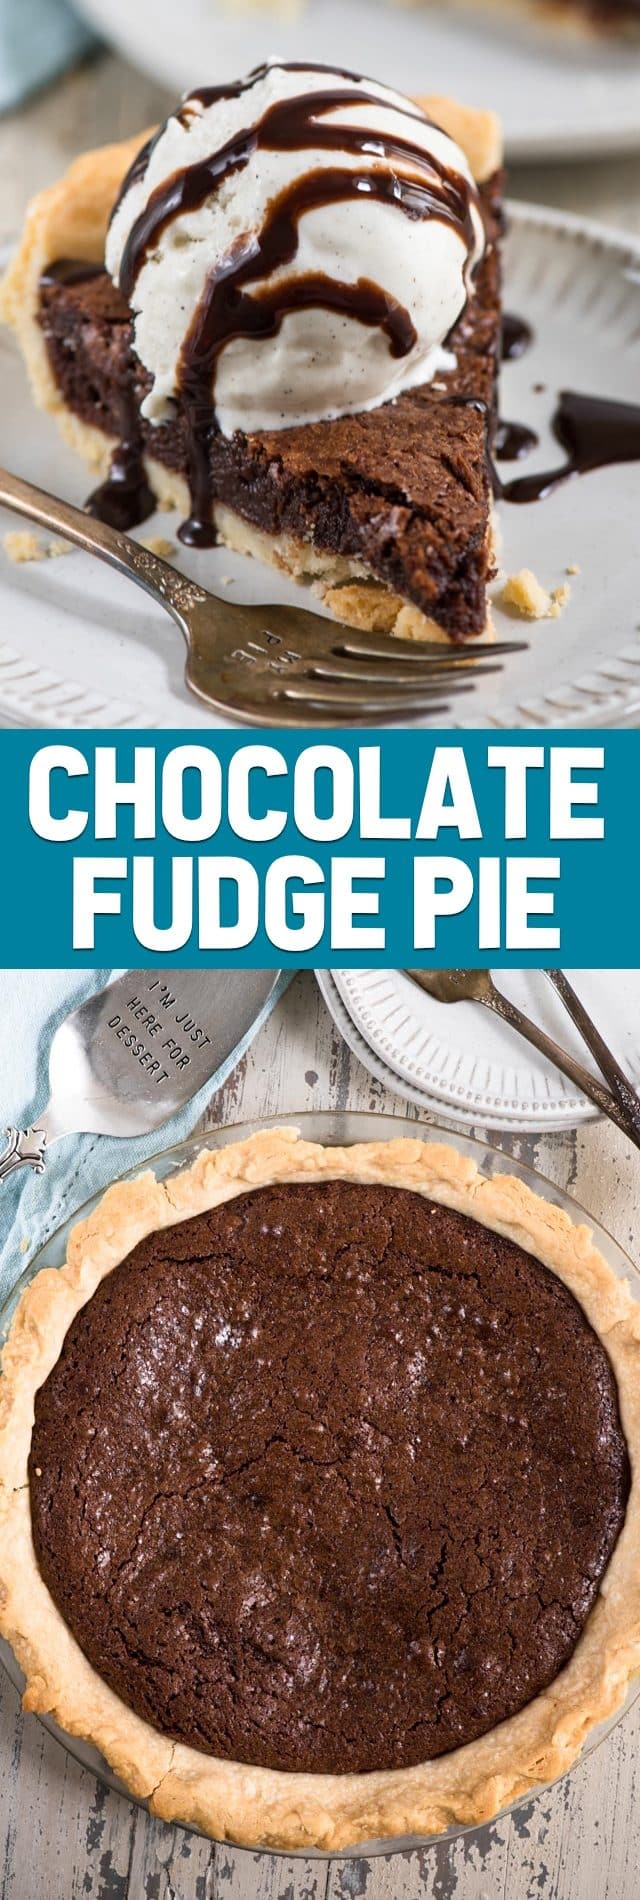 chocolate fudge pie collage